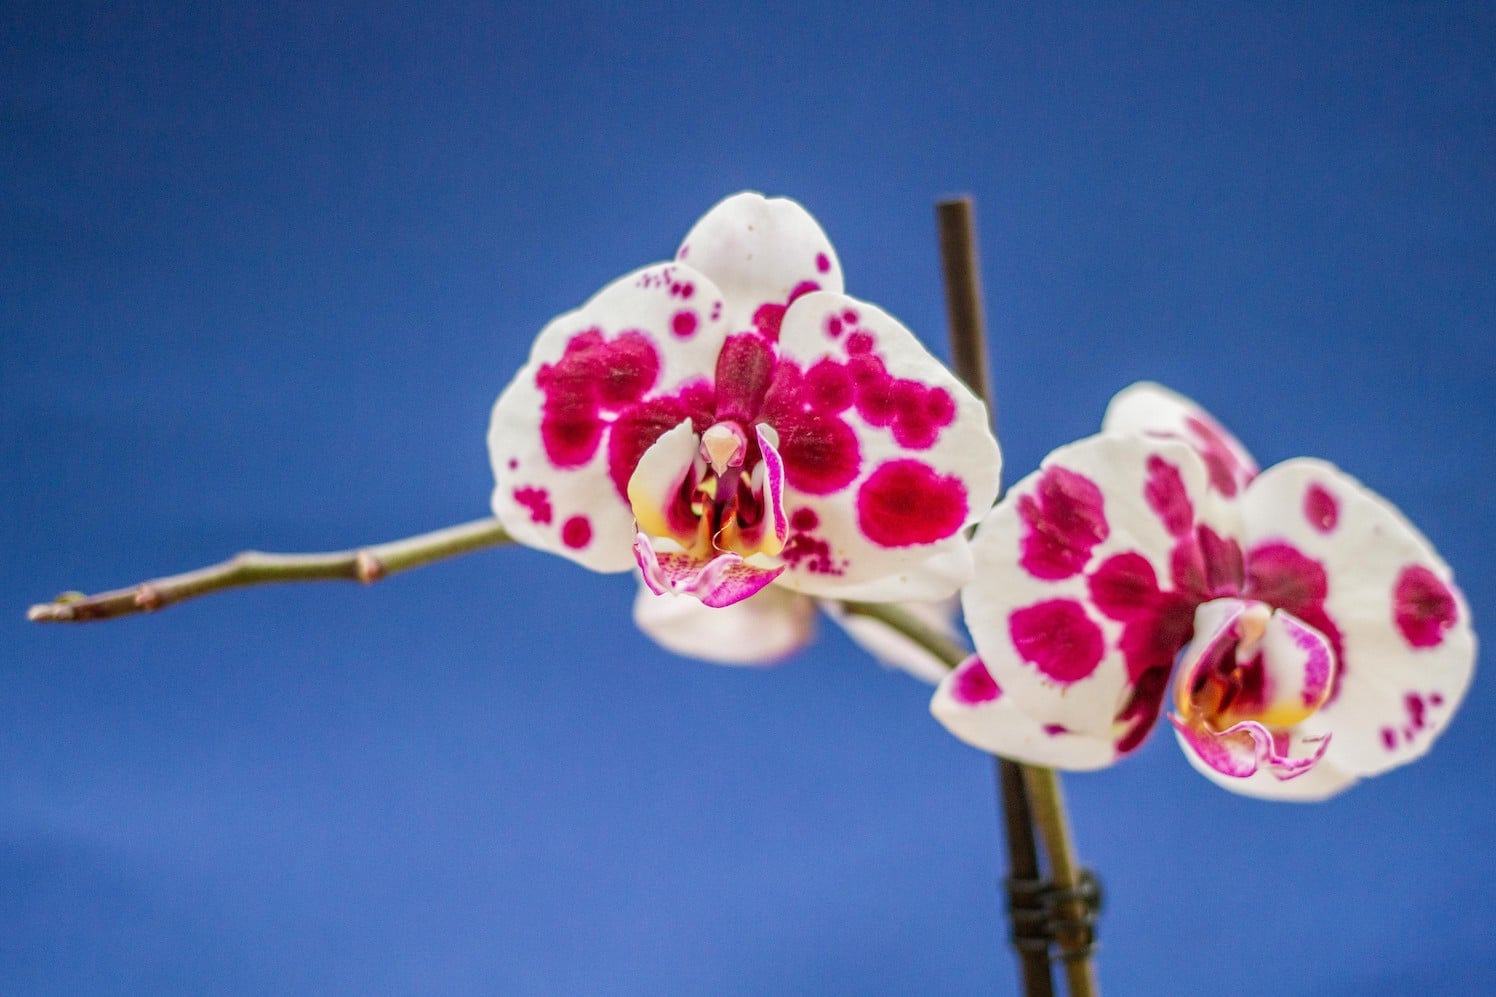 Ultima creazione , una rara orchidea - I Manufatti di Eli